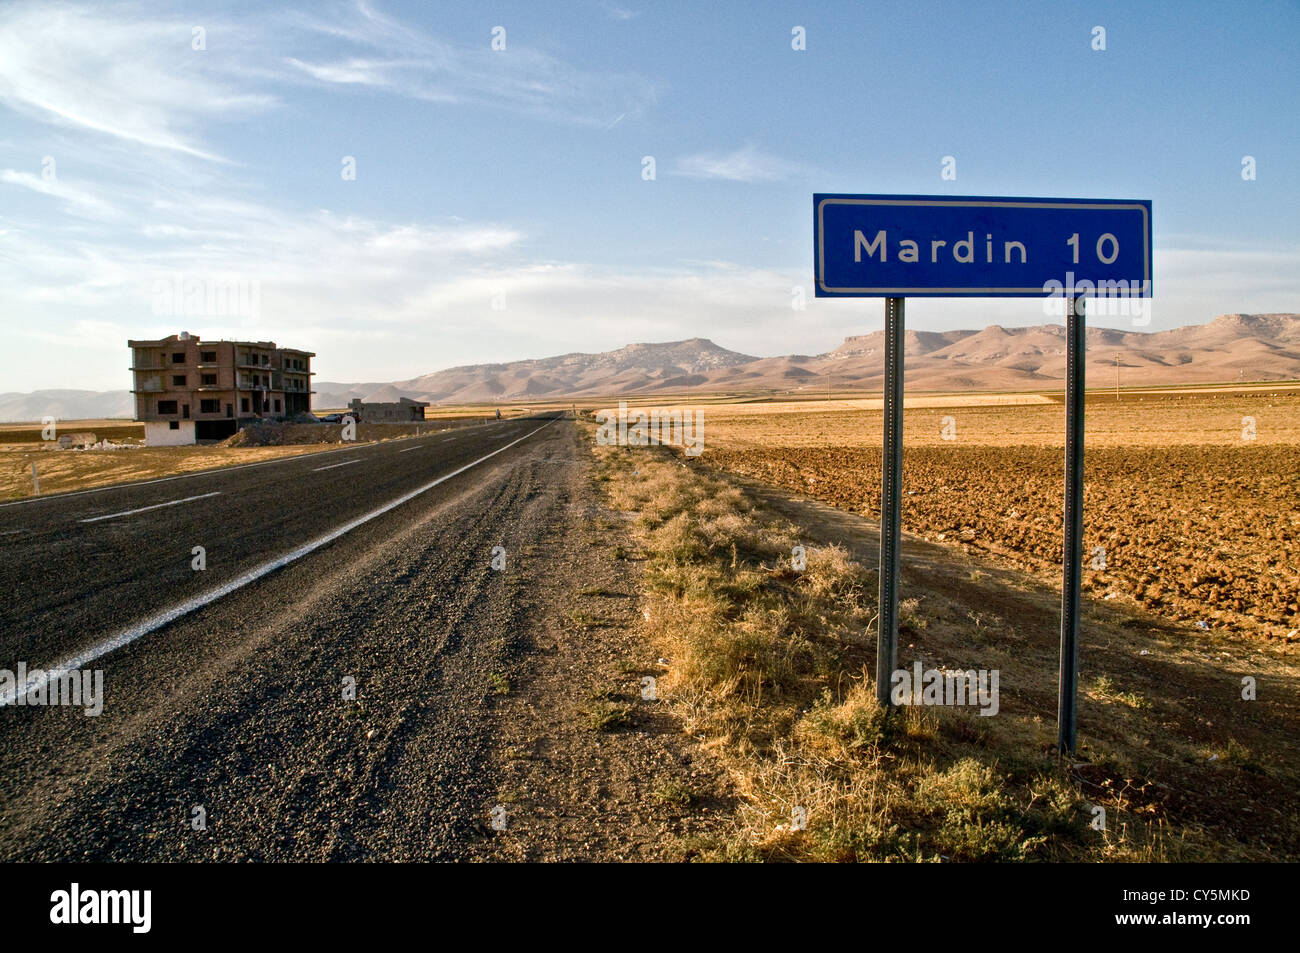 Un panneau routier et une route allant vers le nord à travers la plaine syrienne en direction de la ville de Mardin, dans la région orientale de l'Anatolie, au sud-est de la Turquie. Banque D'Images